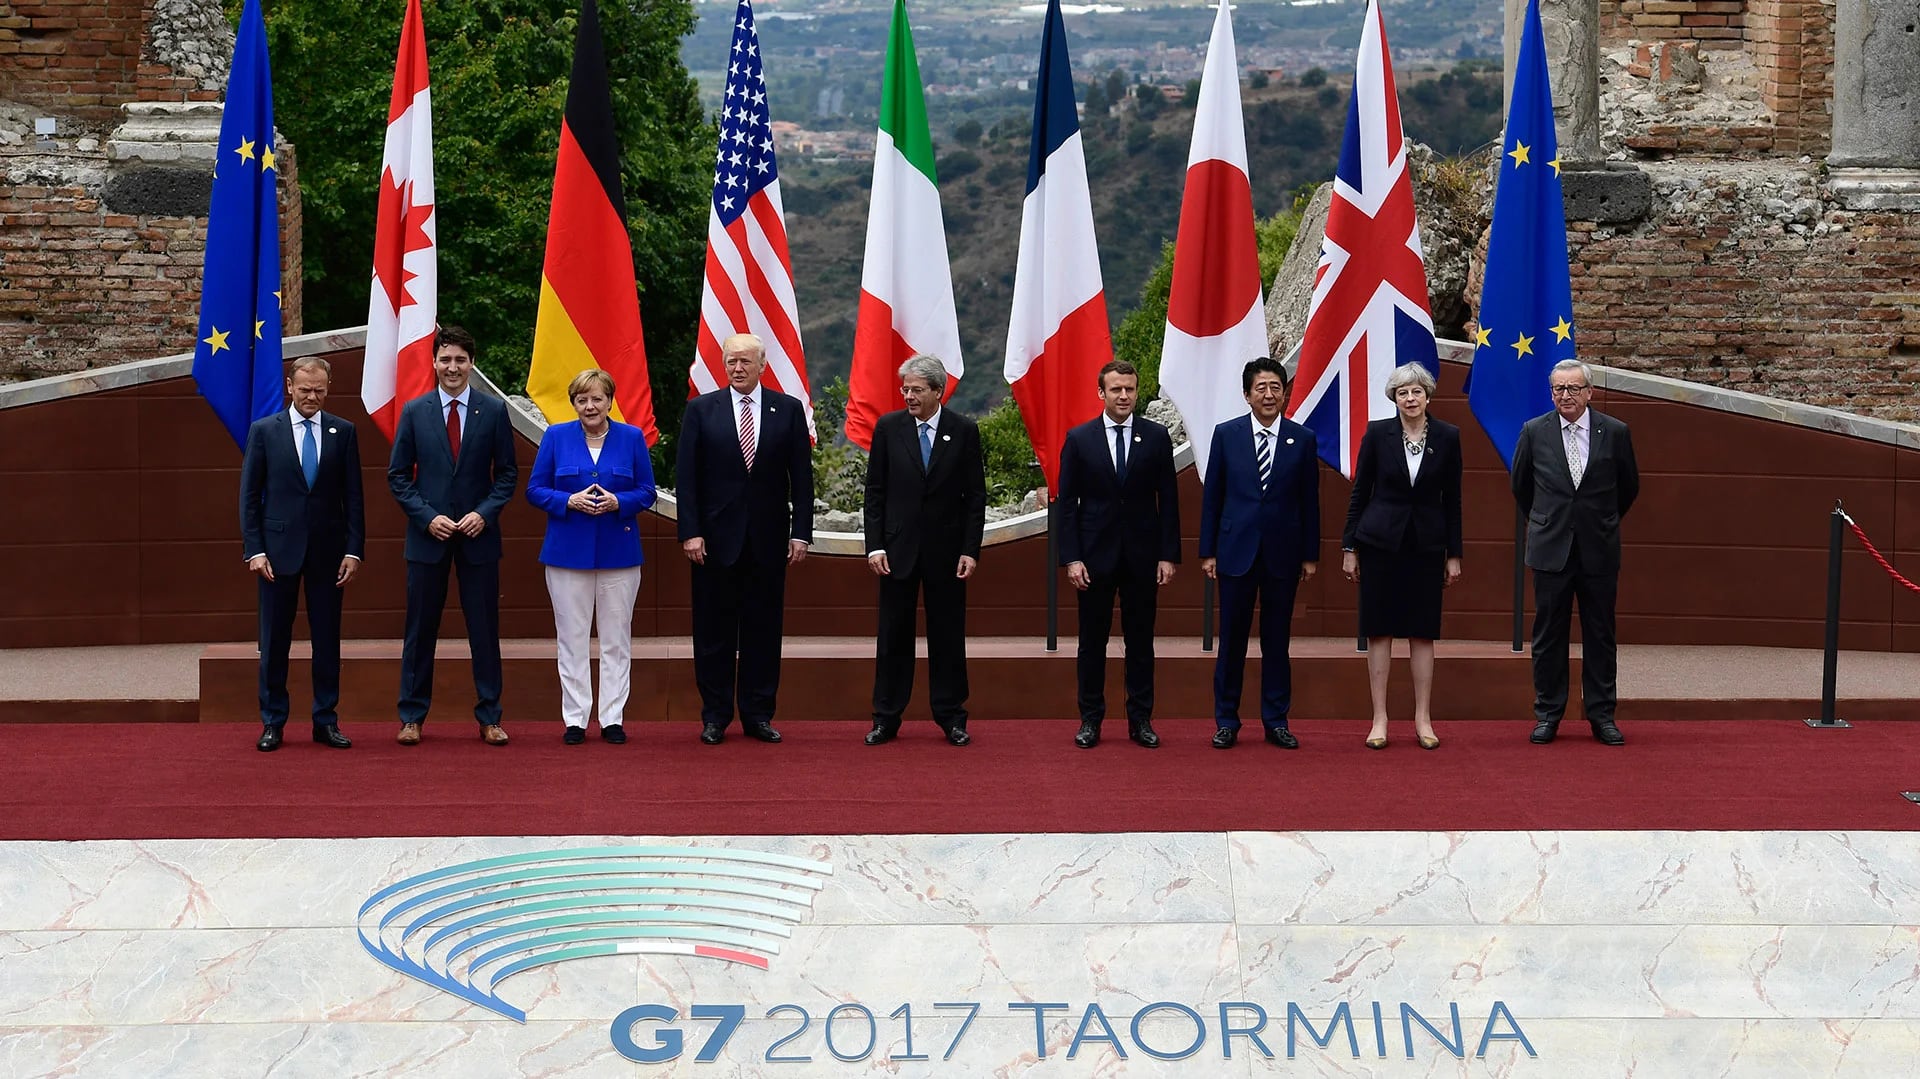 Los líderes del G7 durante la tradicional foto protocolaria. (AFP)